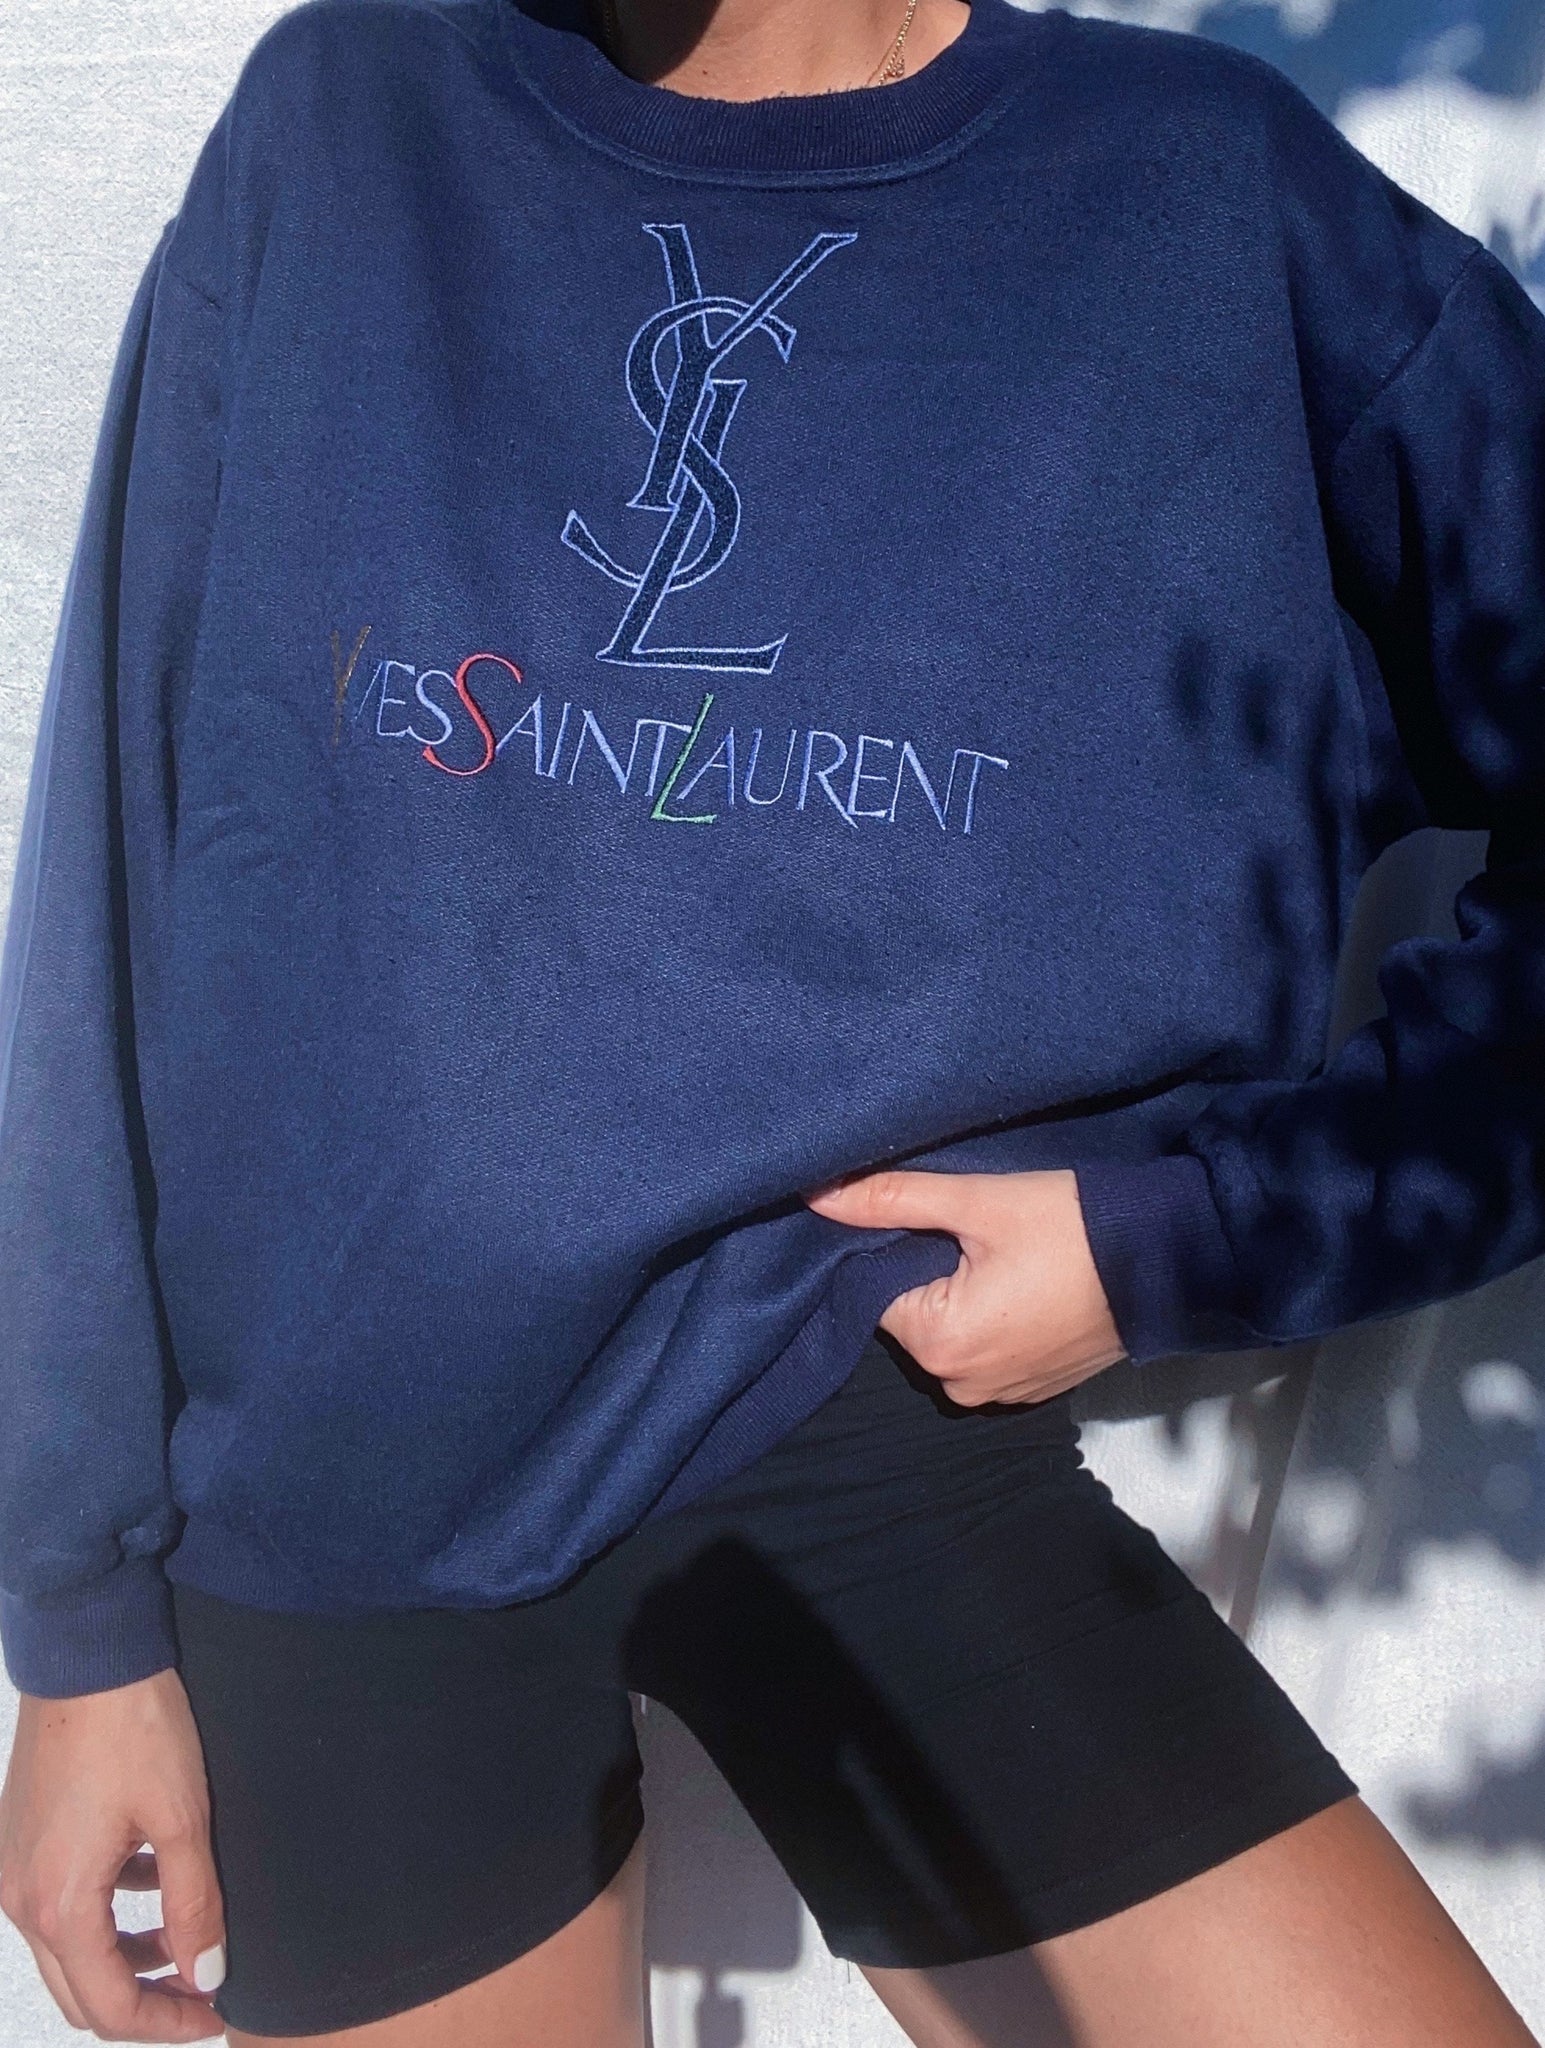 Vintage 90s Yves Saint Laurent Sweatshirt – NÜNÜ VINTAGE